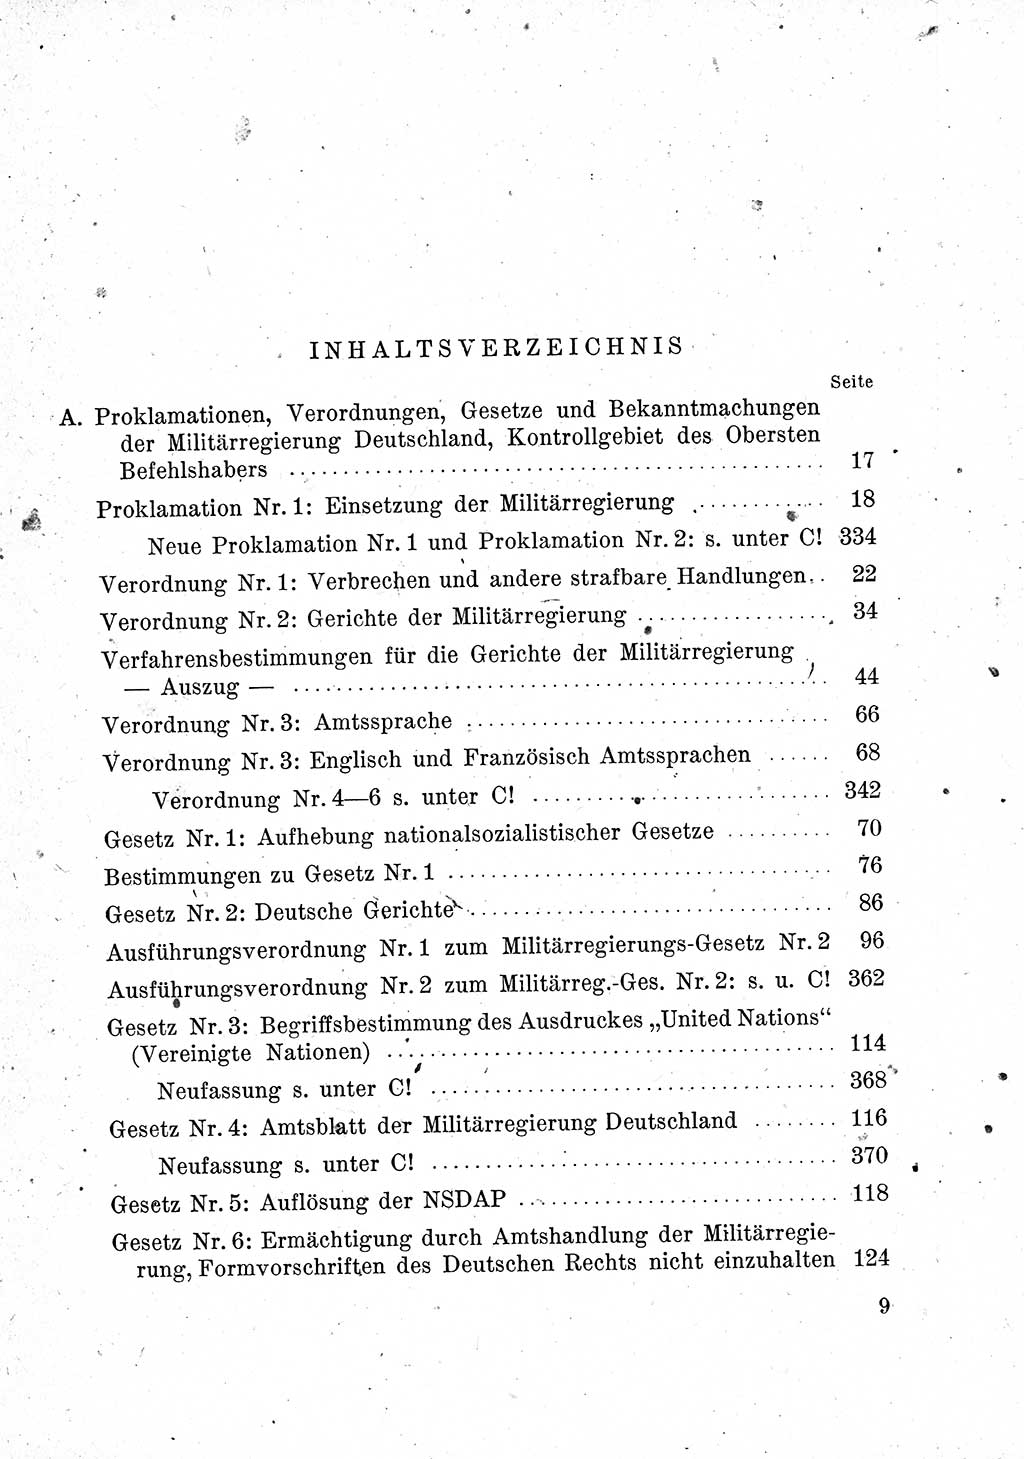 Das Recht der Besatzungsmacht (Deutschland), Proklamationen, Deklerationen, Verordnungen, Gesetze und Bekanntmachungen 1947, Seite 9 (R. Bes. Dtl. 1947, S. 9)